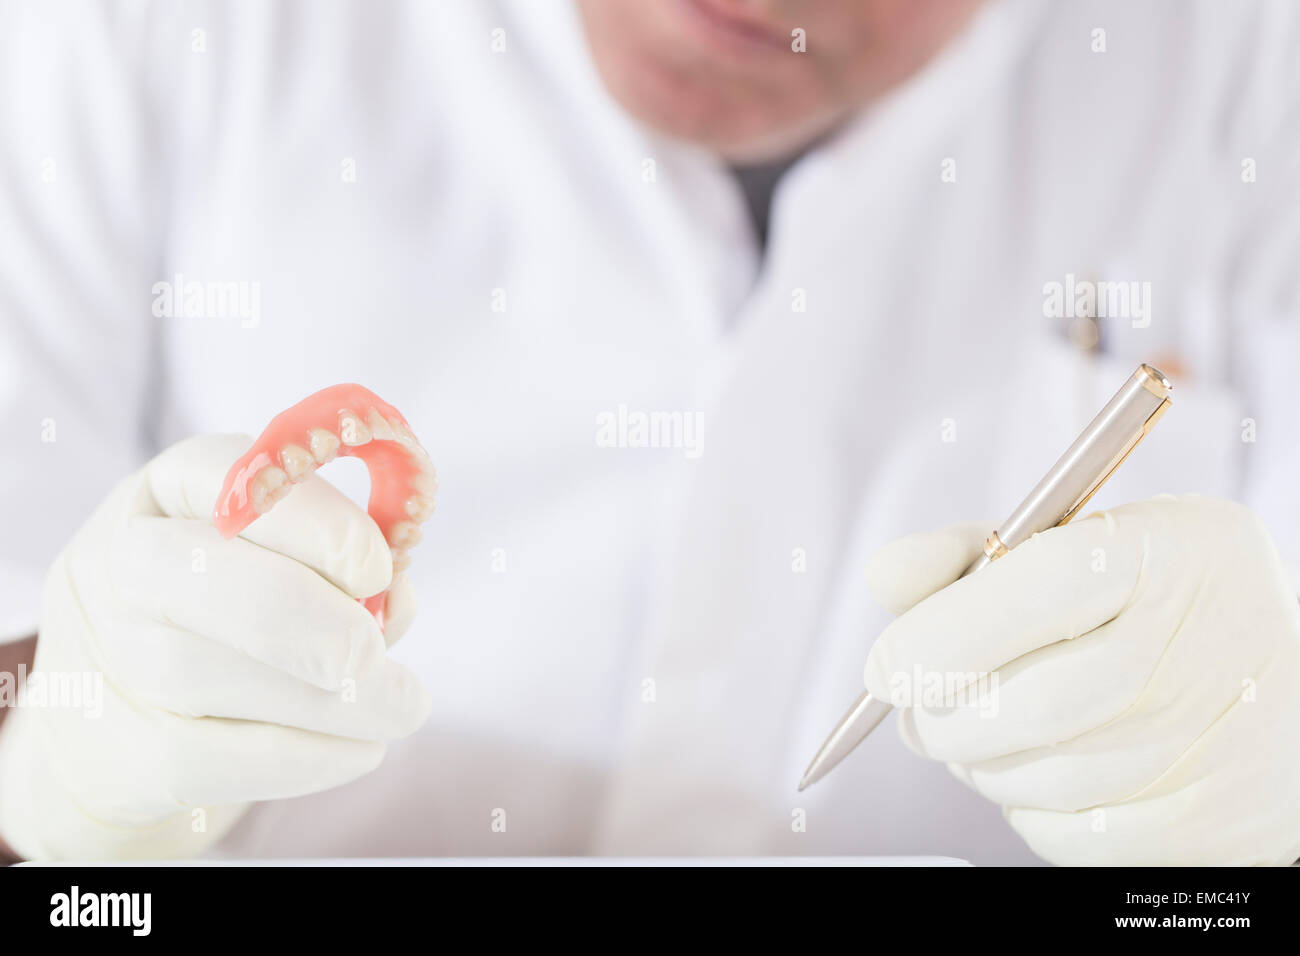 L'examen de technicien dentaire dentier Banque D'Images